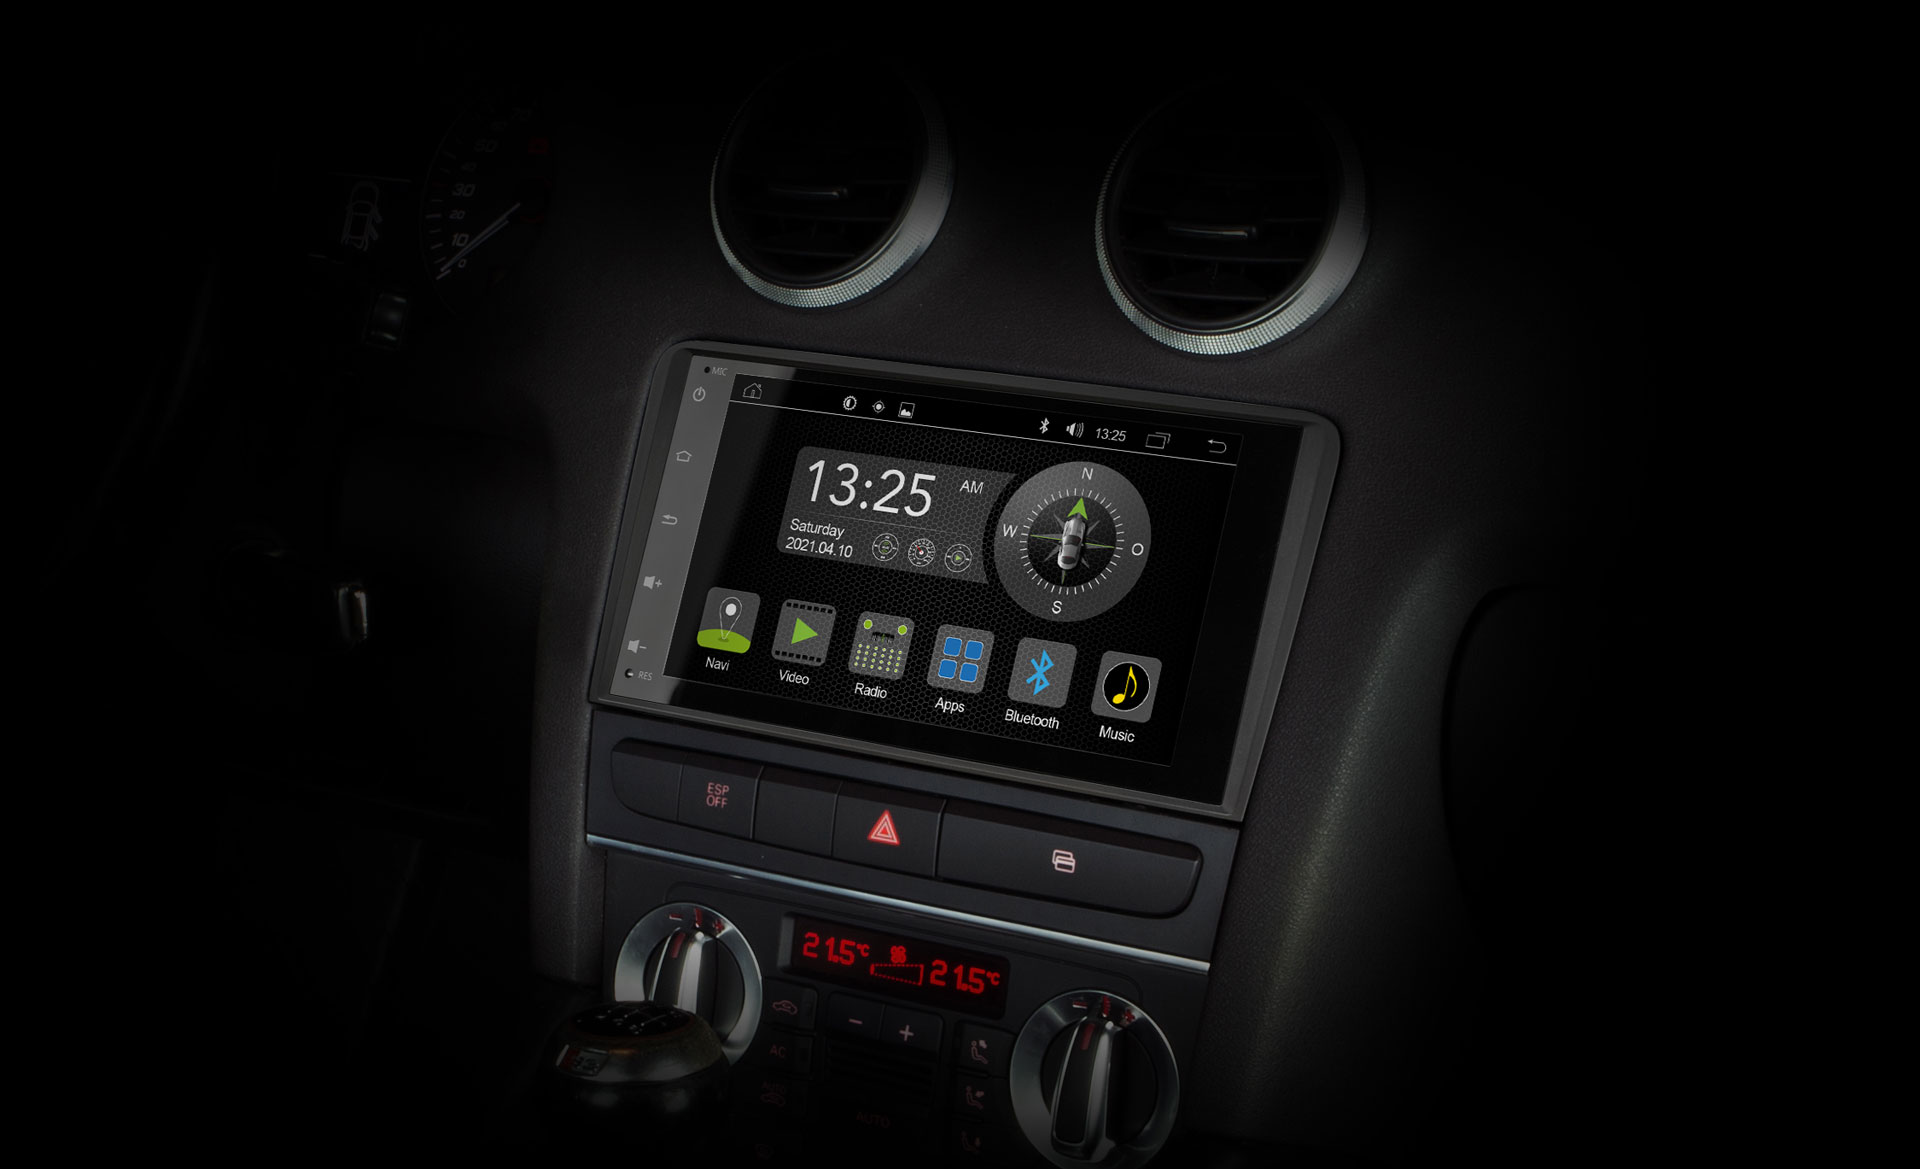 Autoradio für Audi A3 mit Navi, Bluetooth, DAB+